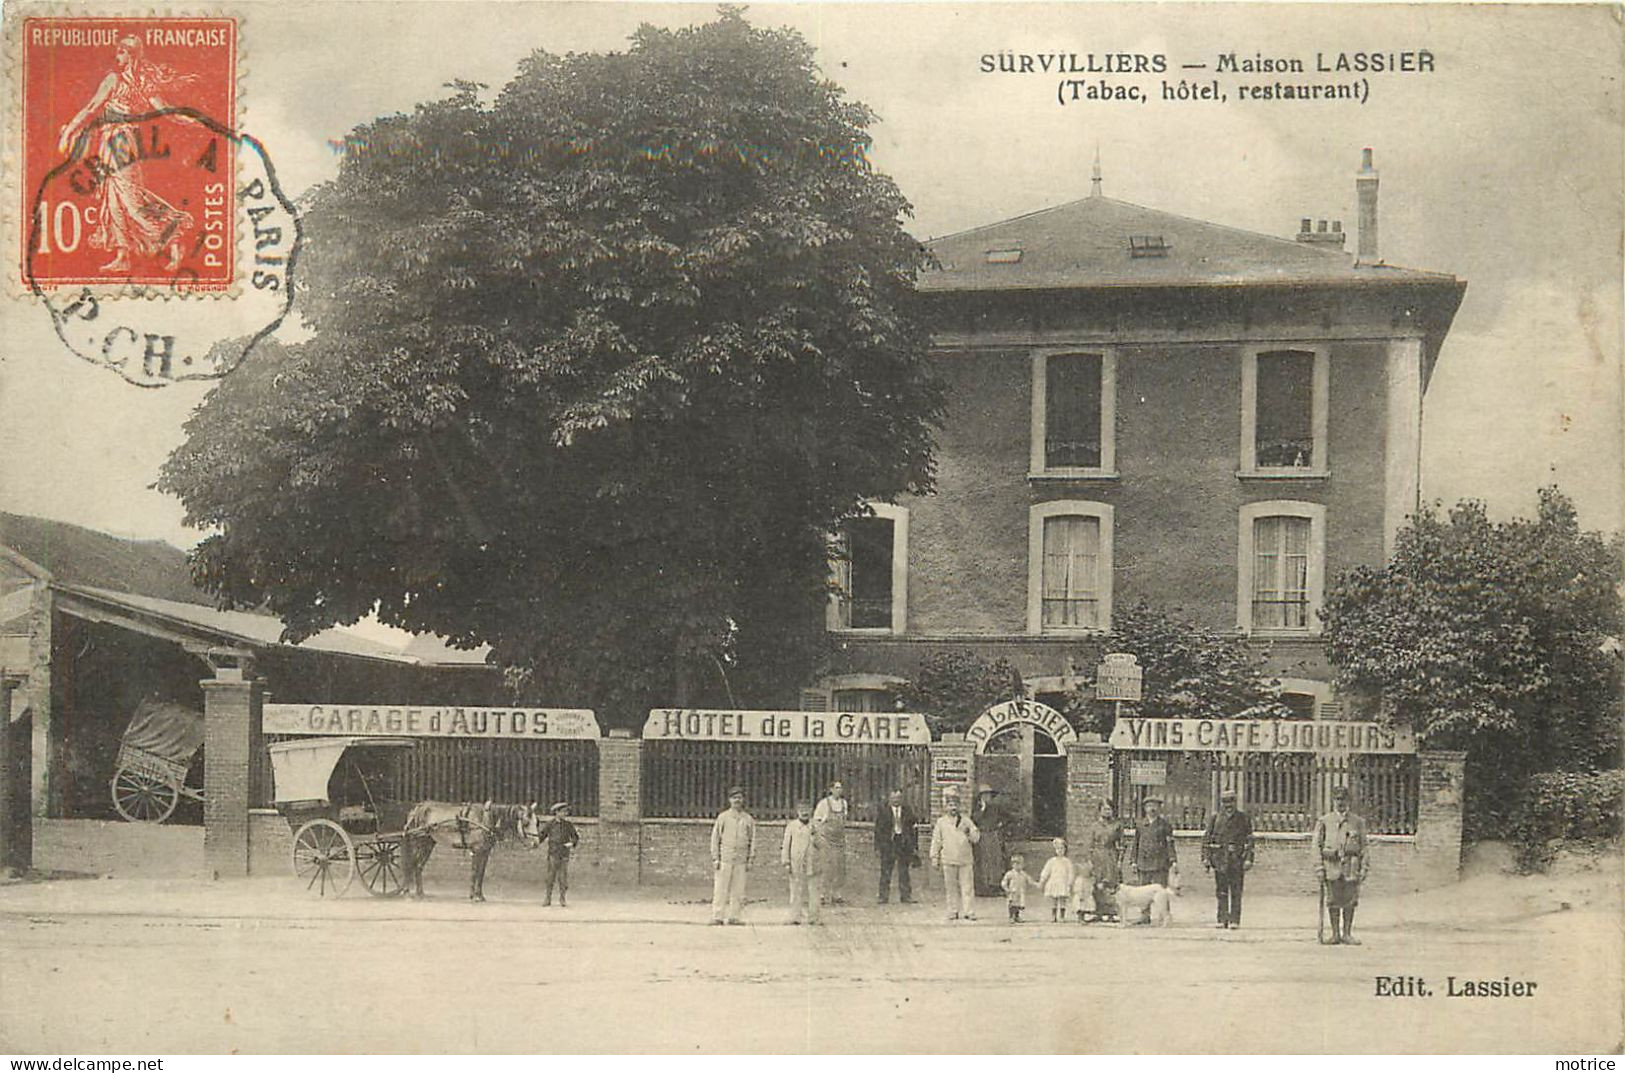 SURVILLIERS - Hôtel De La Gare,Maison Lassier (Tabac, Hôtel, Restaurant). - Survilliers